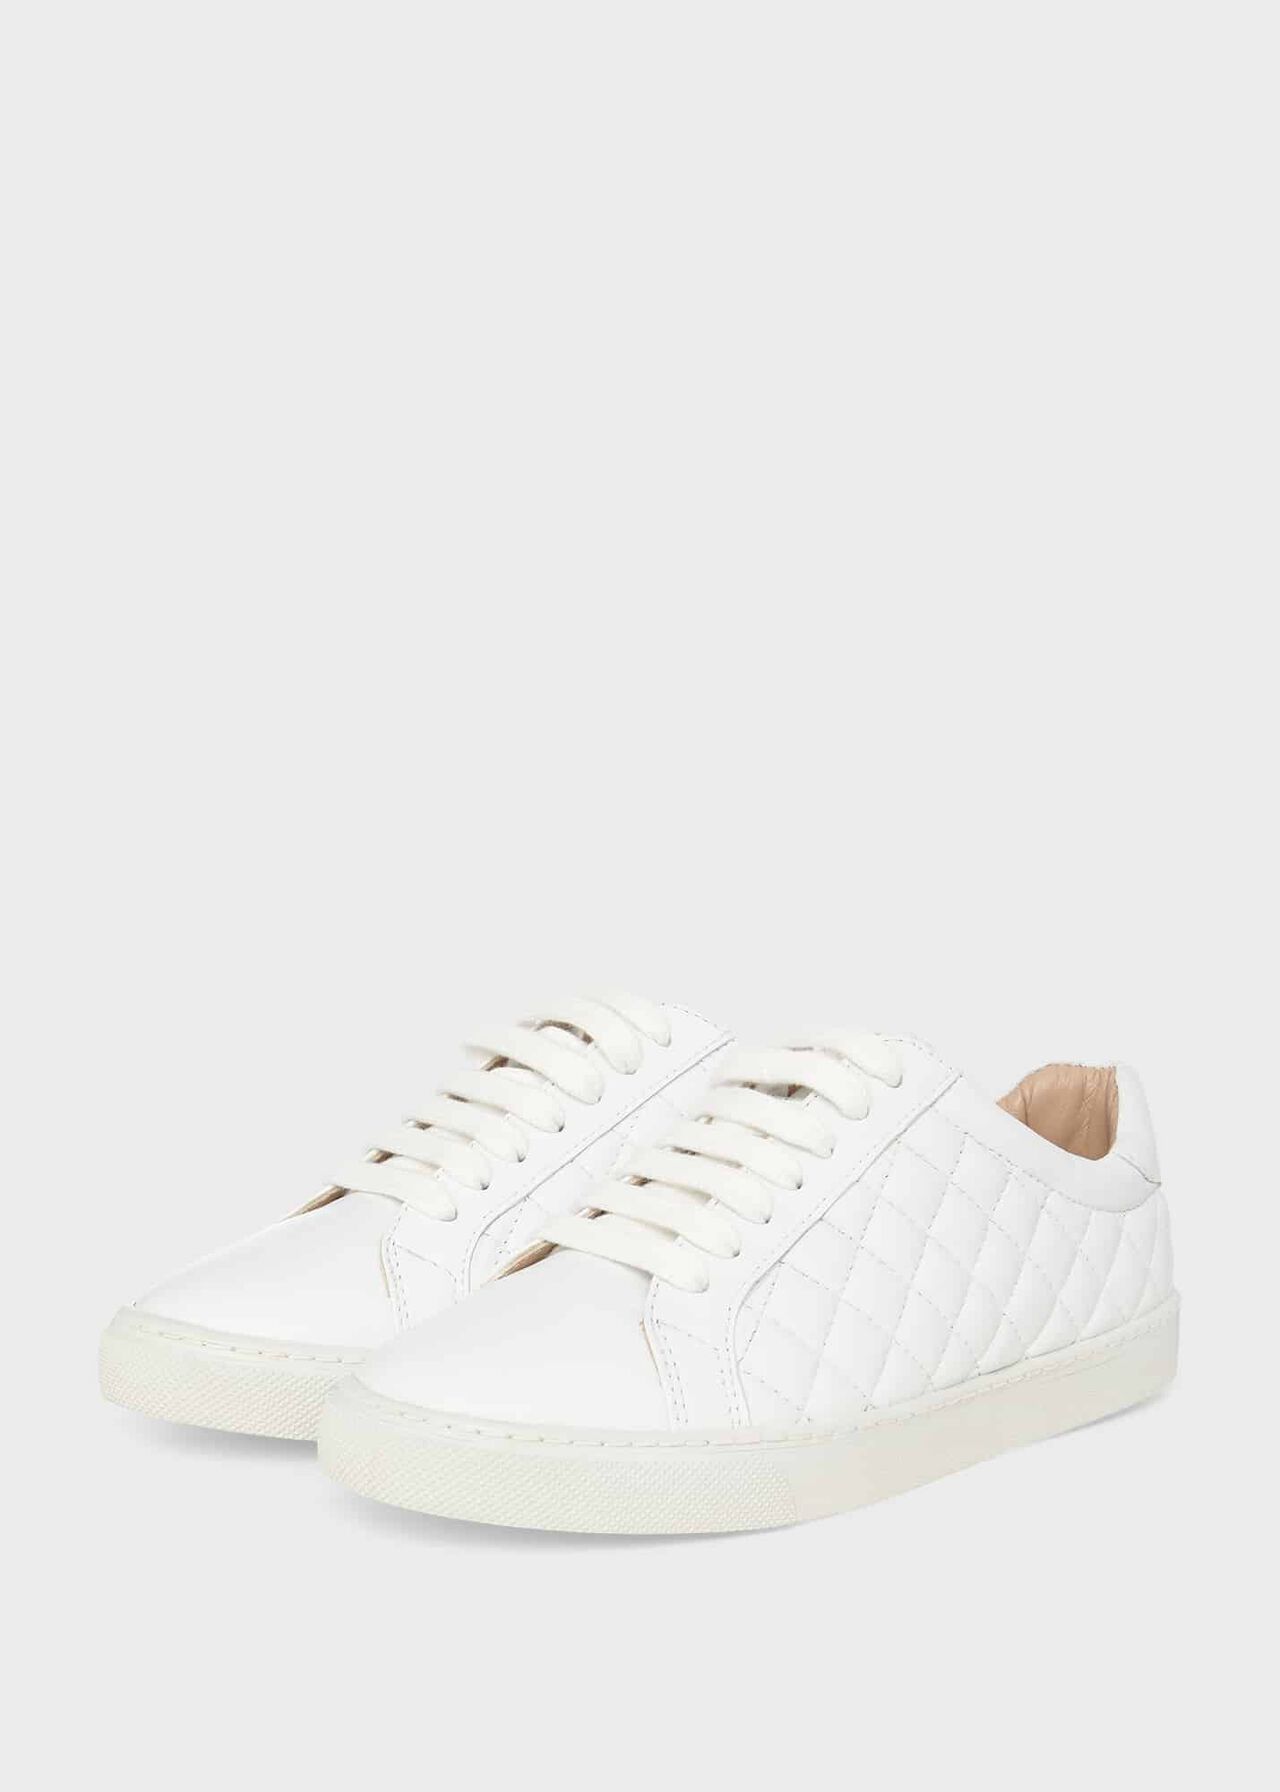 Laurel Sneakers, White, hi-res